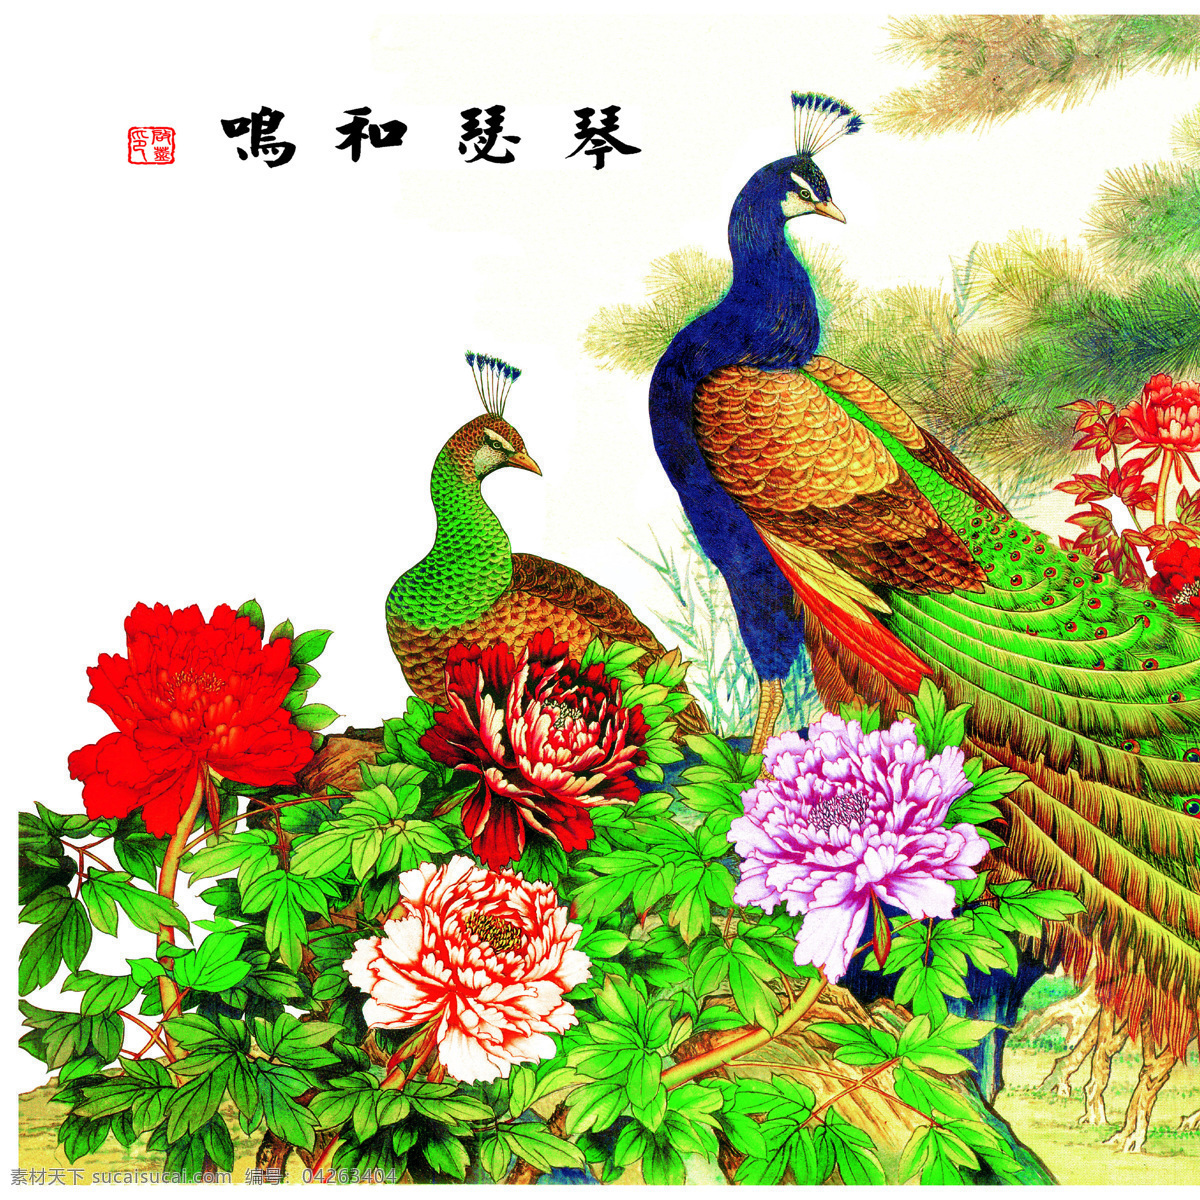 文化 艺术 花鸟画 中国风 植物 鲜花 鸟 伶俐 水墨画 孔雀 书画文字 文化艺术 白色